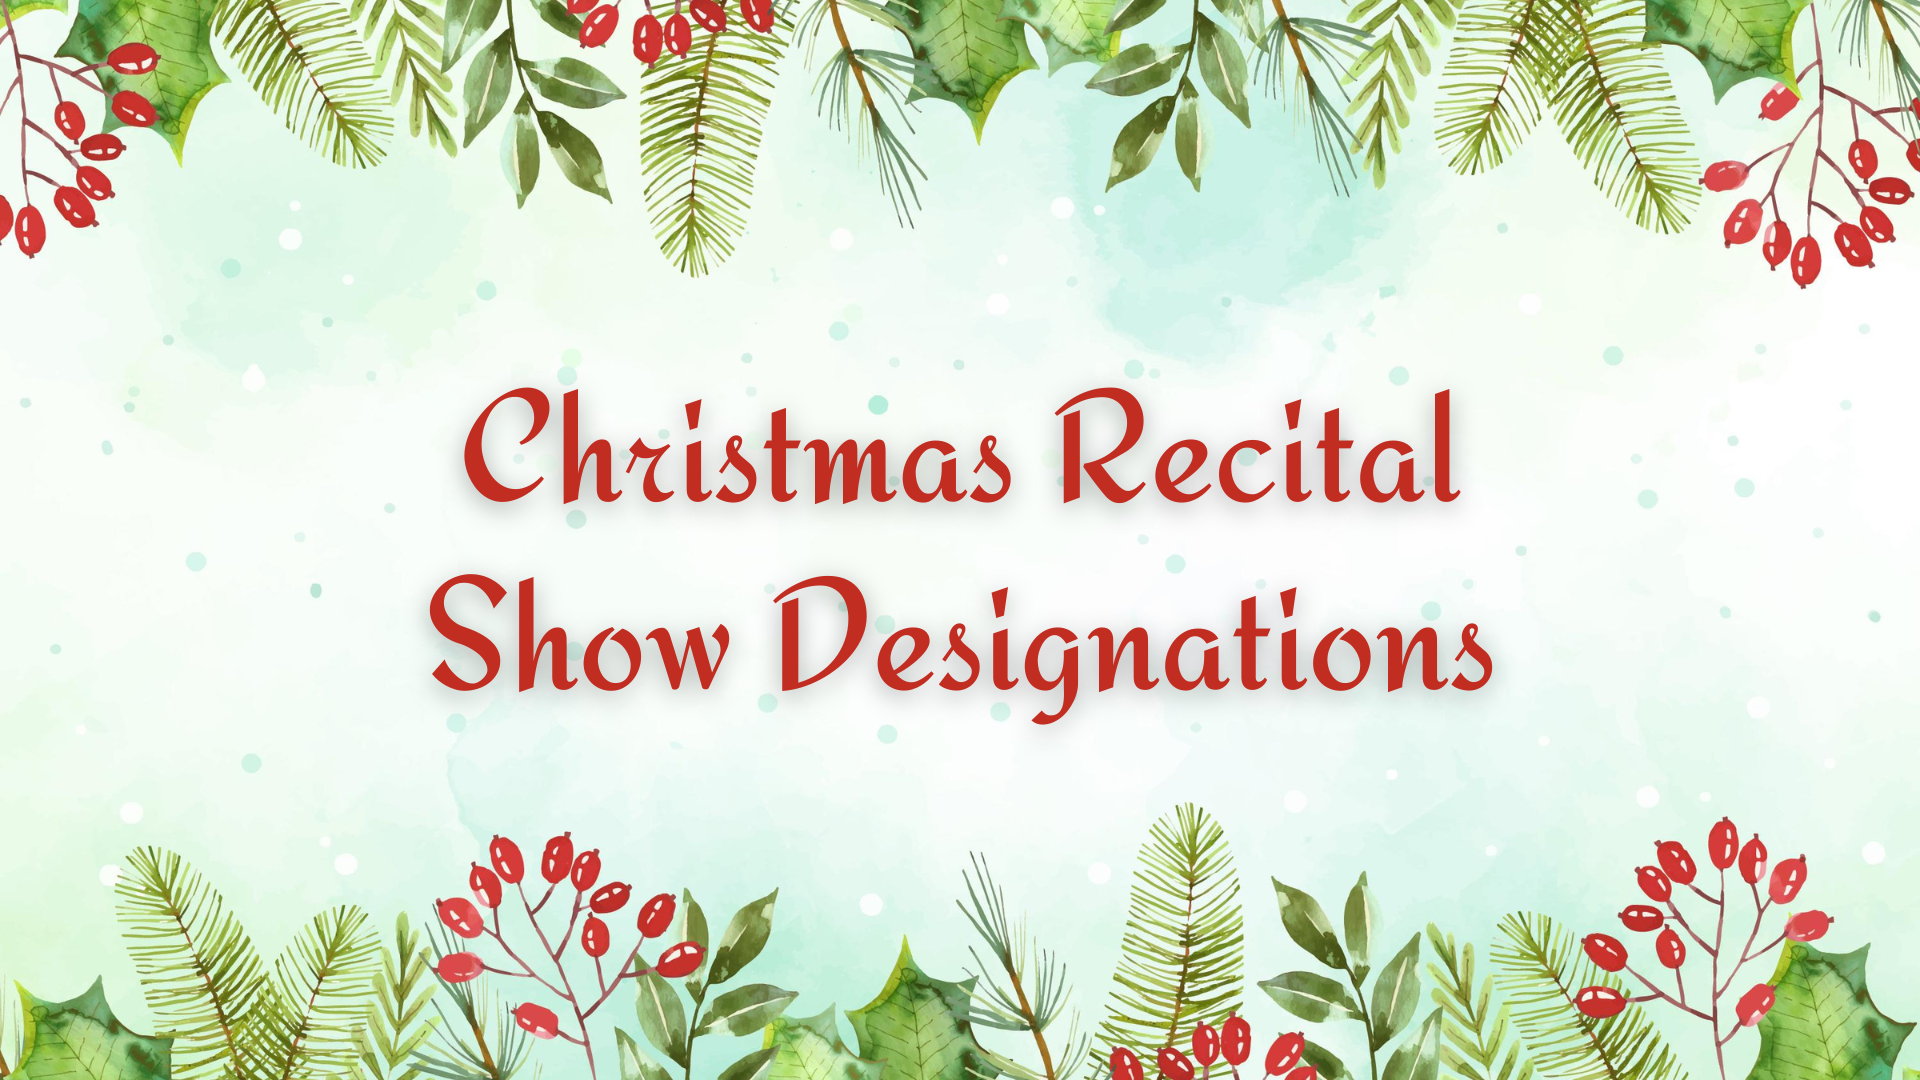 Christmas Recital Show Designations